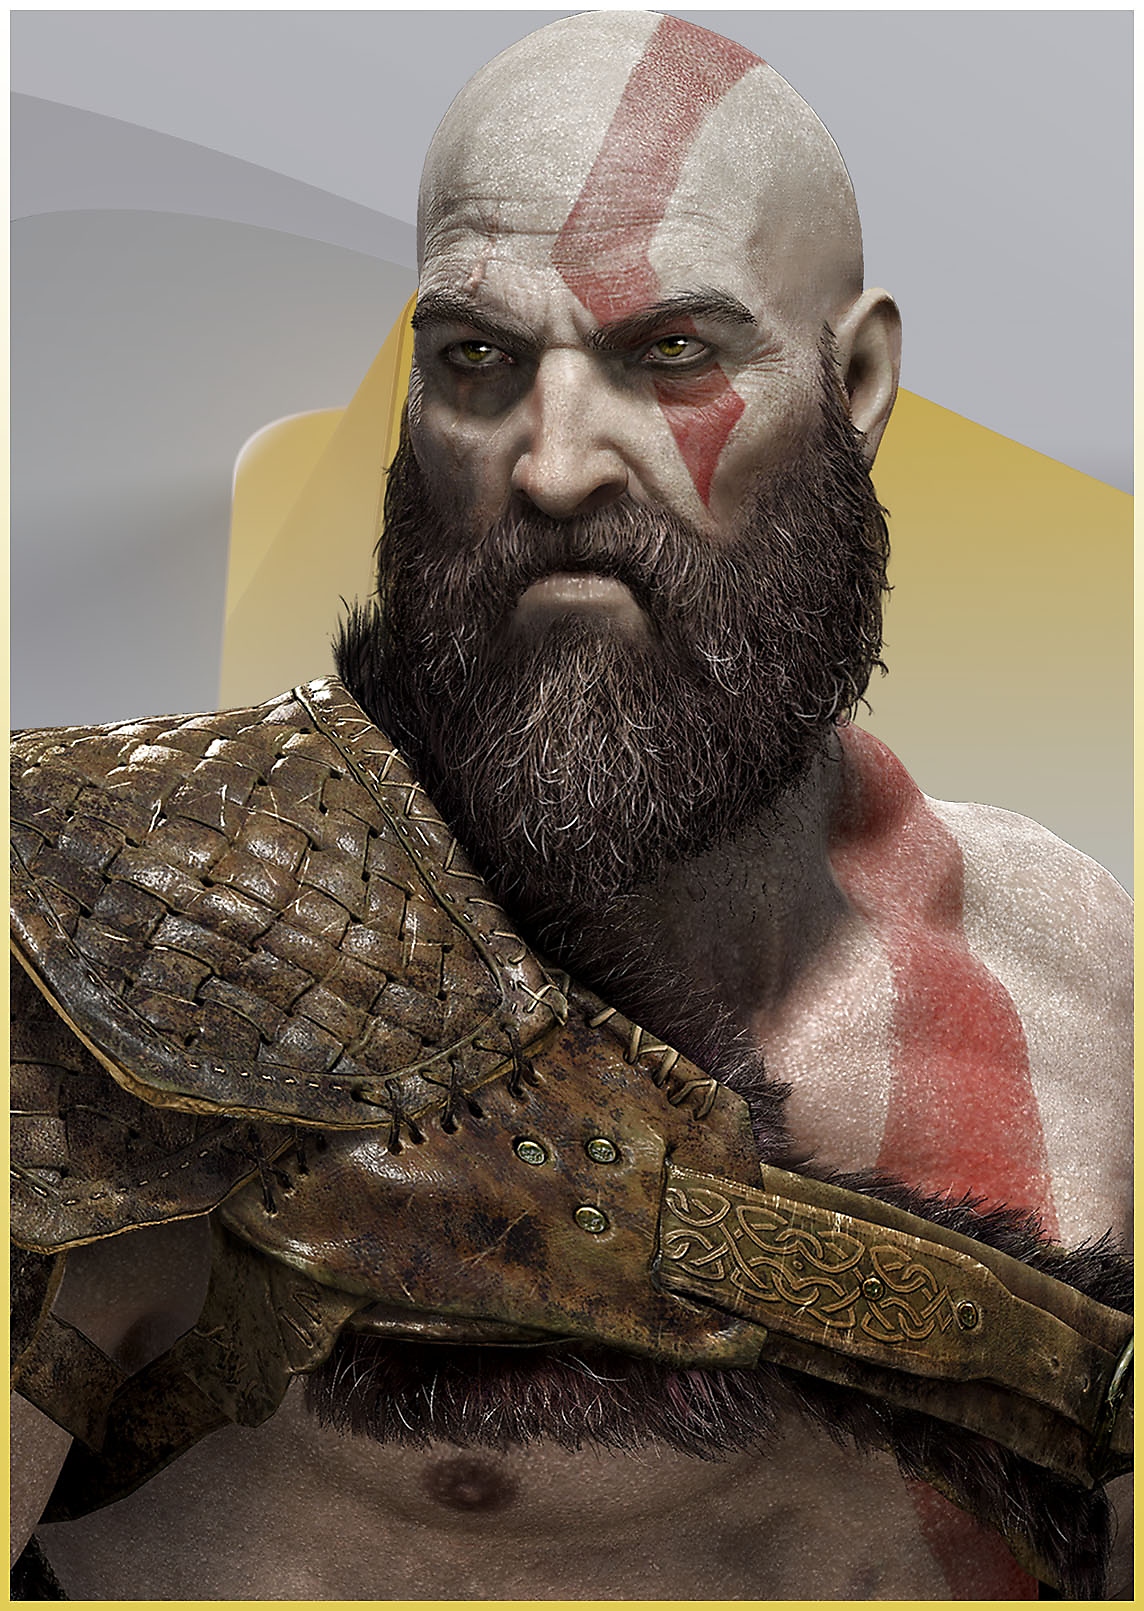 صورة كريتوس من لعبة God of War يبدو فيها غاضبًا